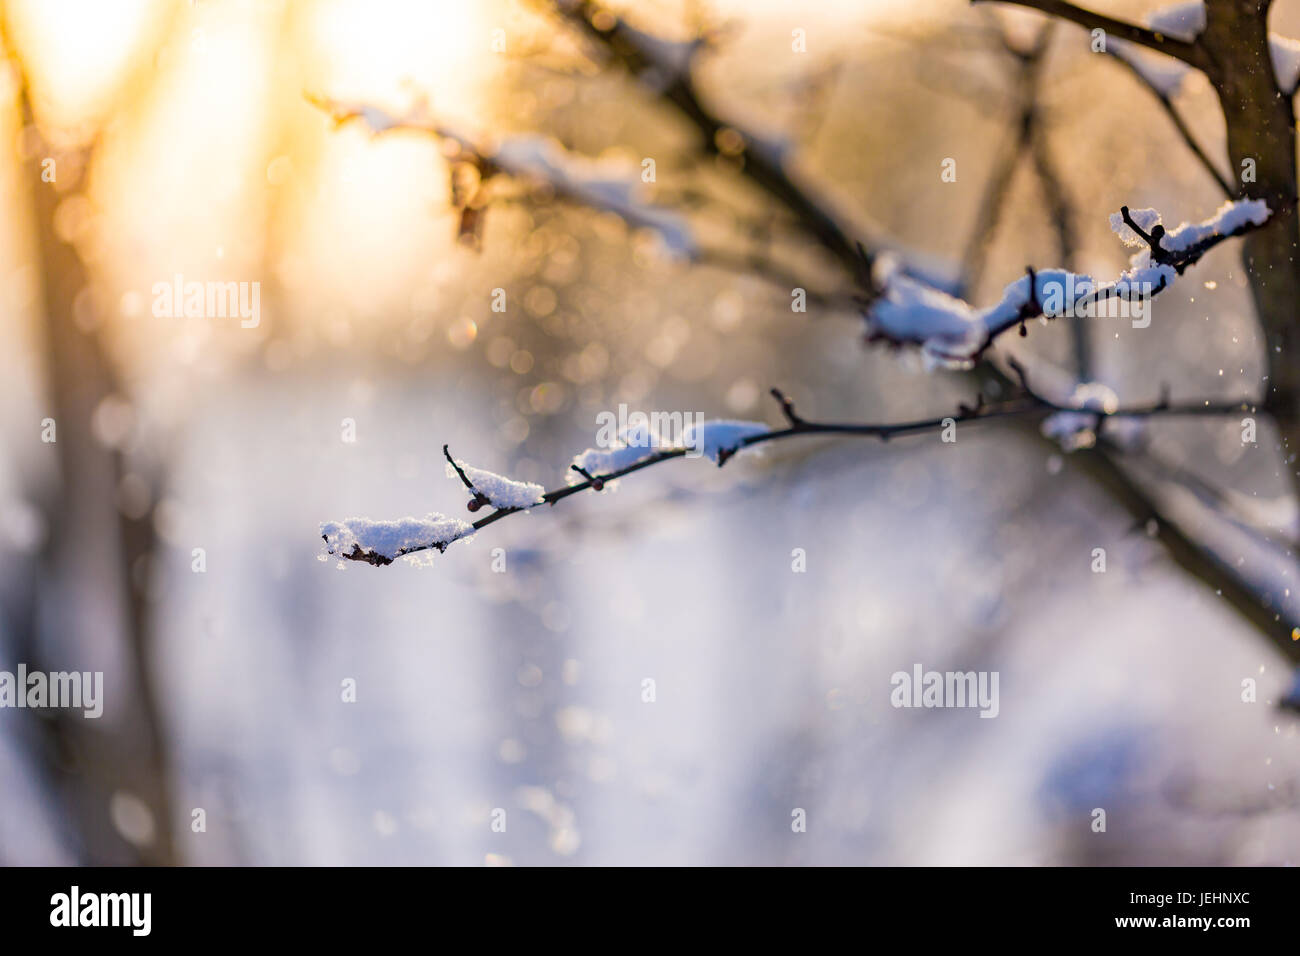 Bel tramonto scena, filiale di inverno e sfondo innevato, butterature fiocchi di neve. Abstract inverno closeup, neve fredda e calda luce del sole Foto Stock